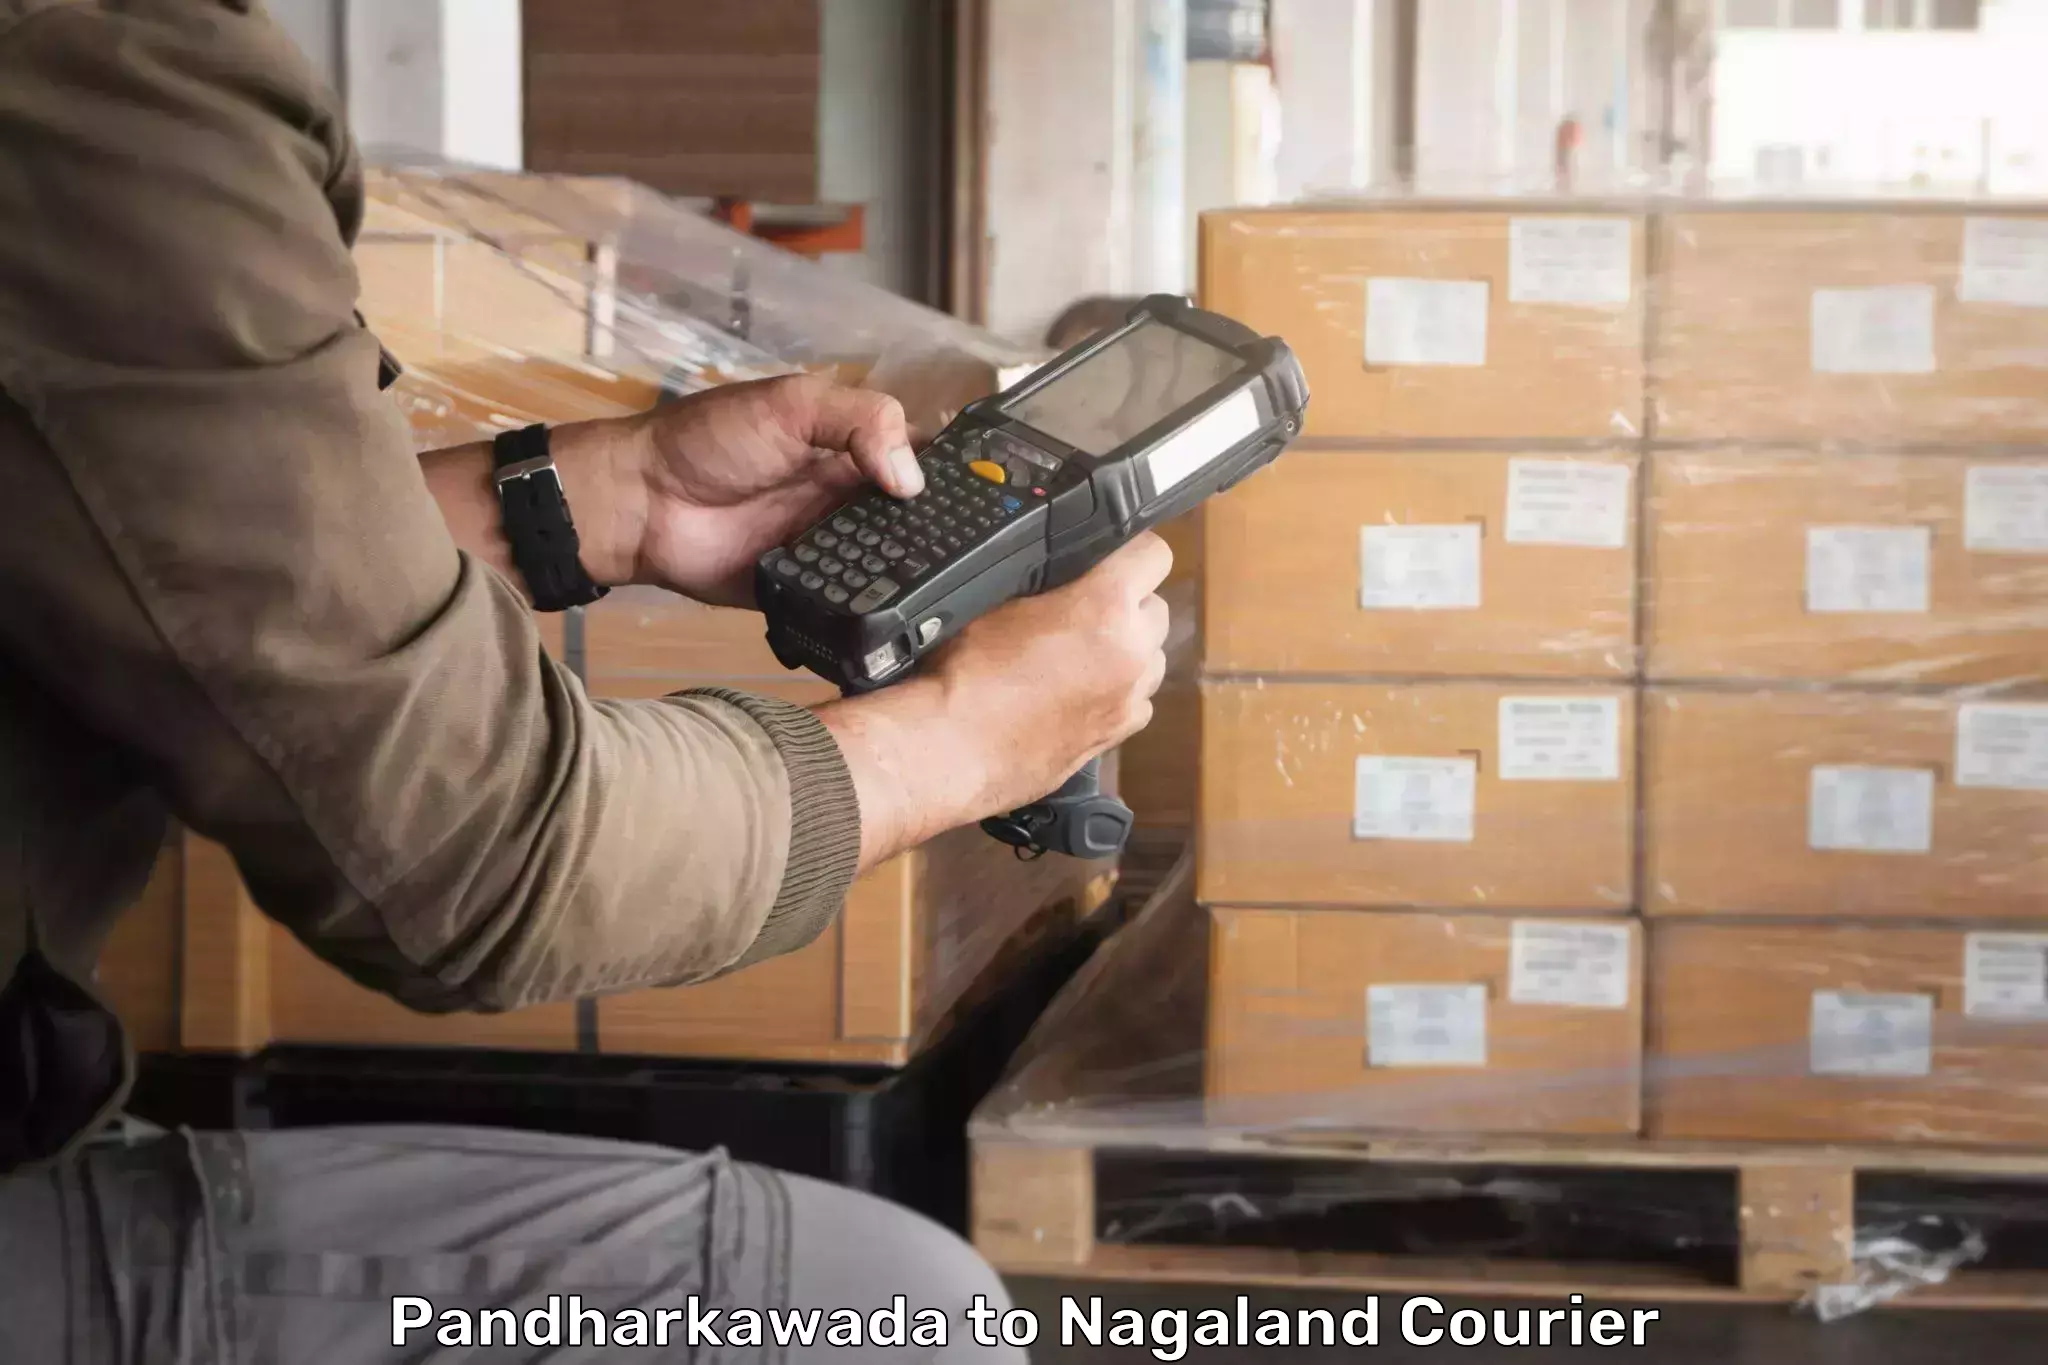 Advanced shipping network Pandharkawada to NIT Nagaland